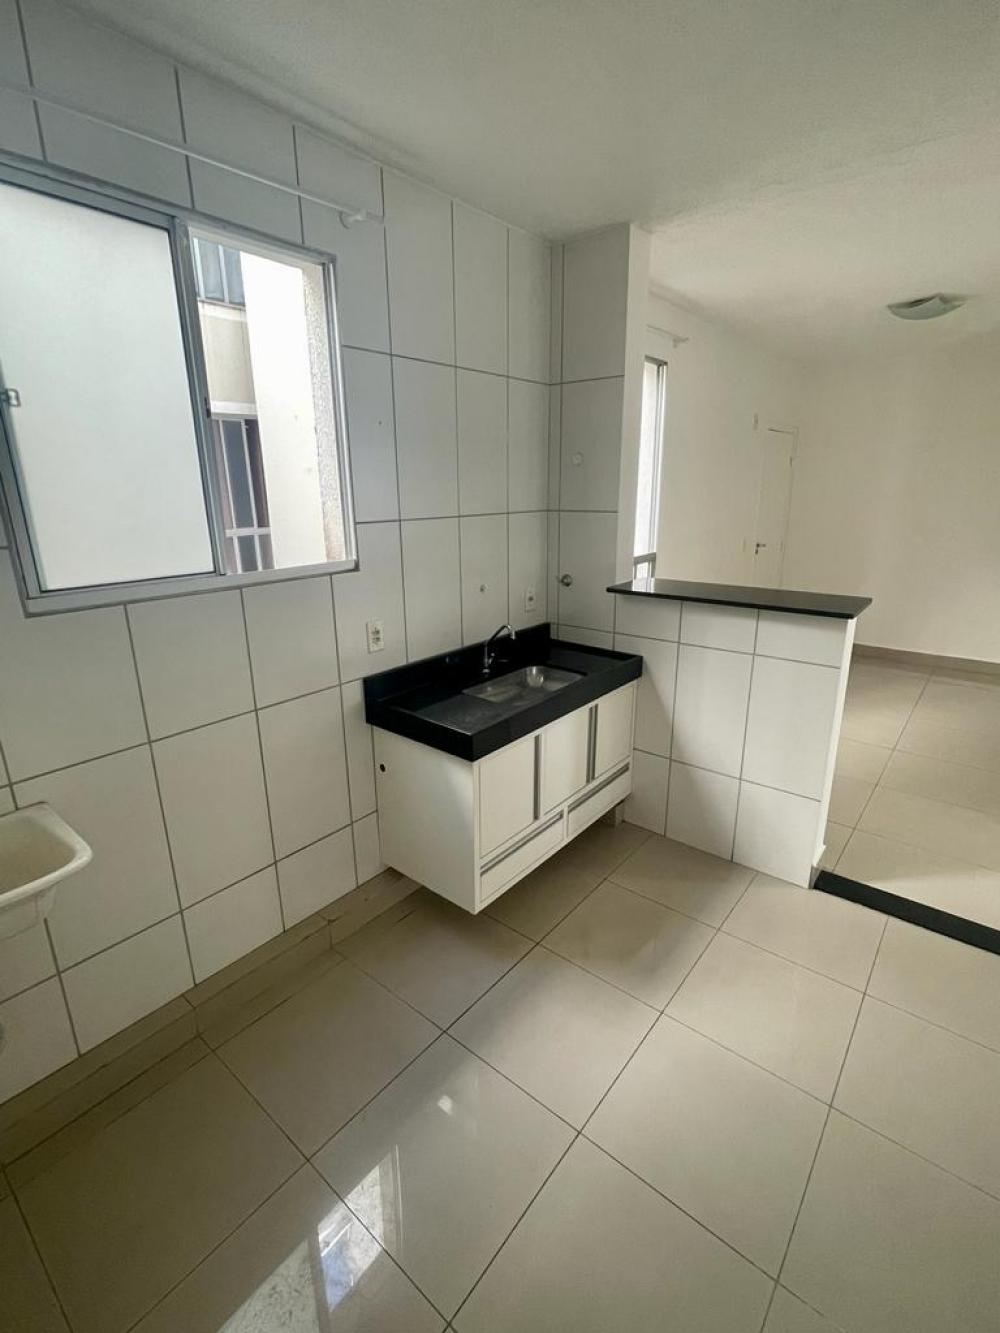 Lindo apartamento localizado no bairro Santa Terezinha, sol da tarde, fácil acesso a Rodovia Geraldo de Barros, contendo sala, cozinha, lavanderia, 1 banheiro e 2 dormitórios.